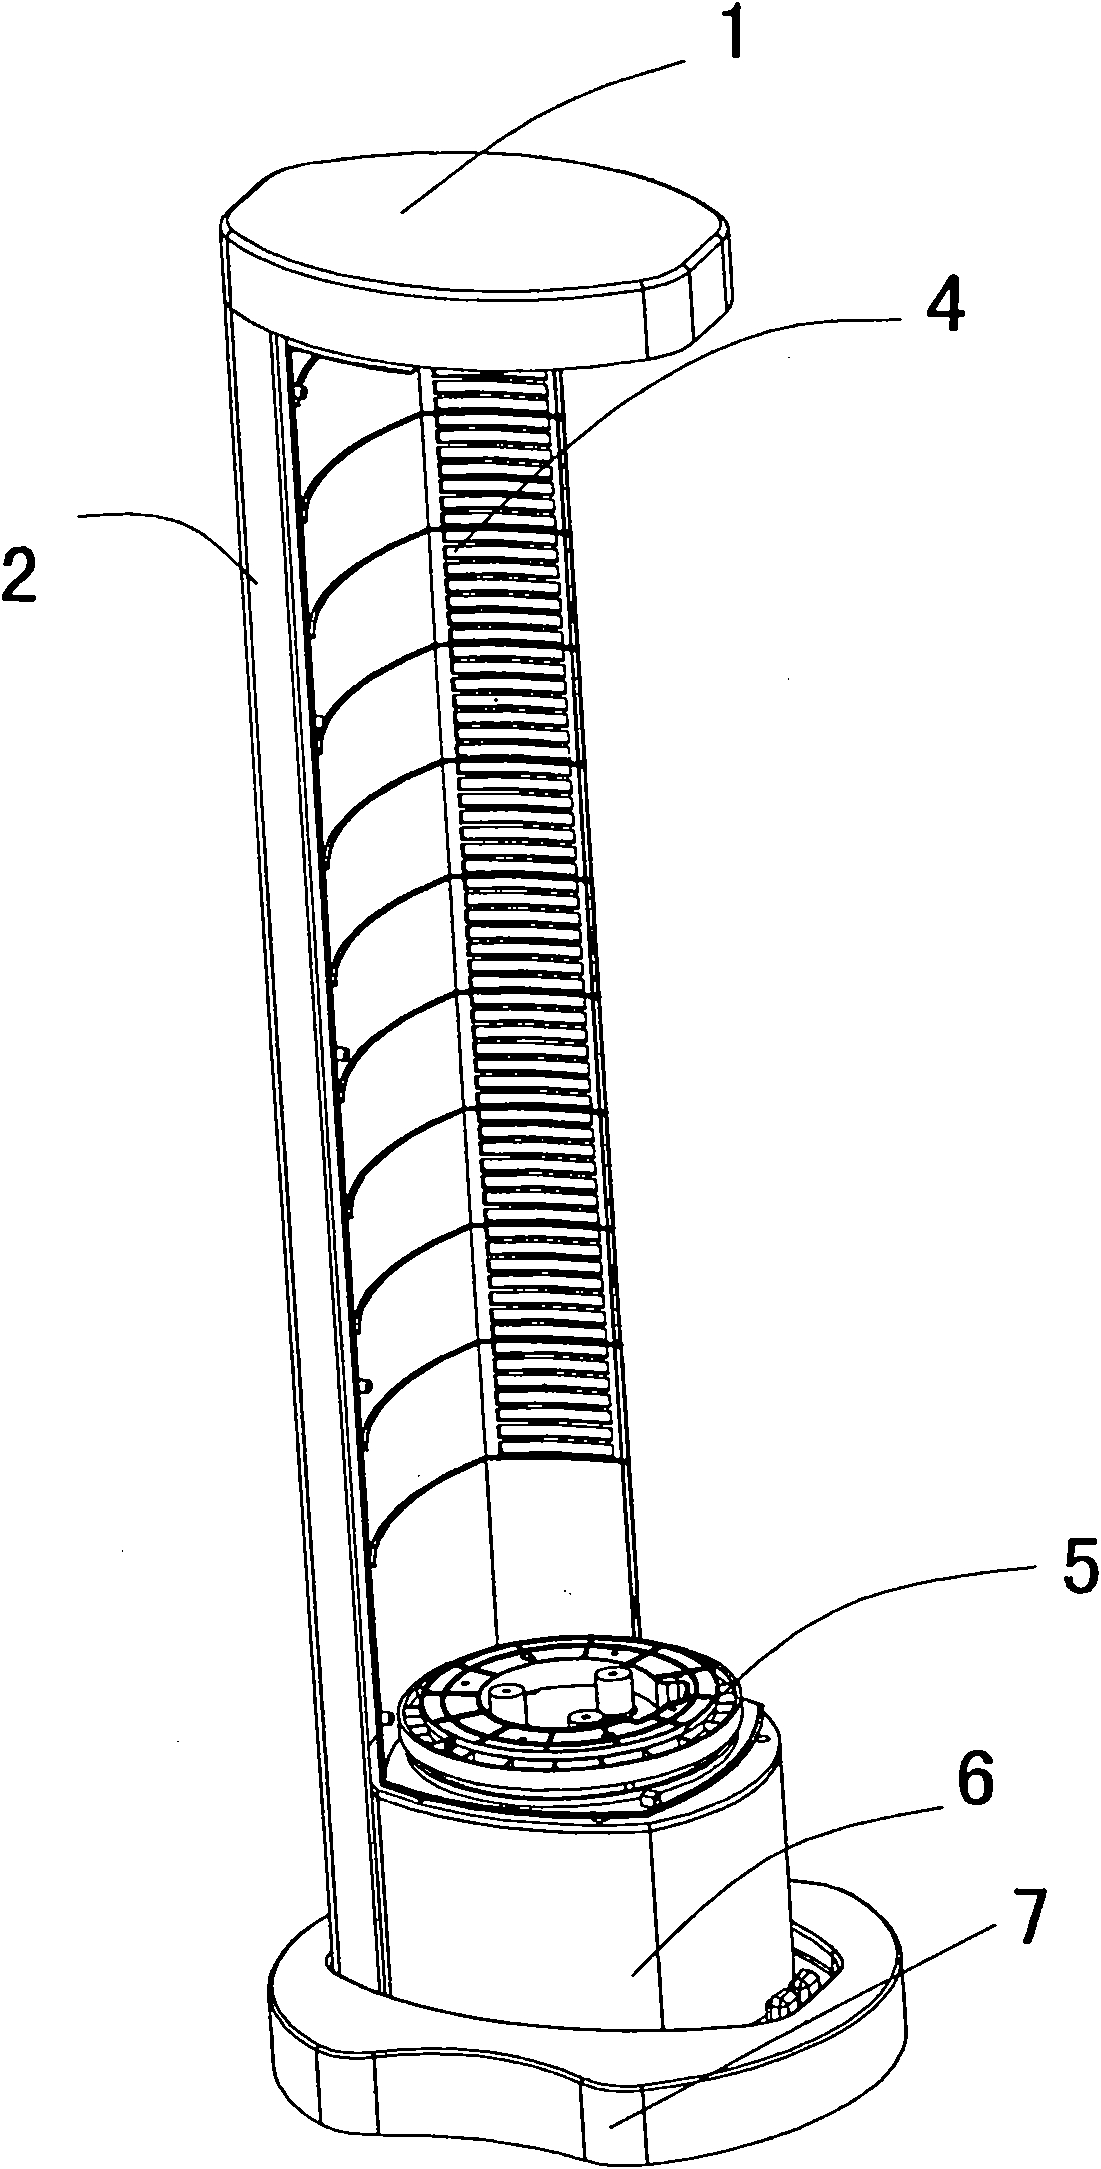 Indoor unit of vertical type air conditioner